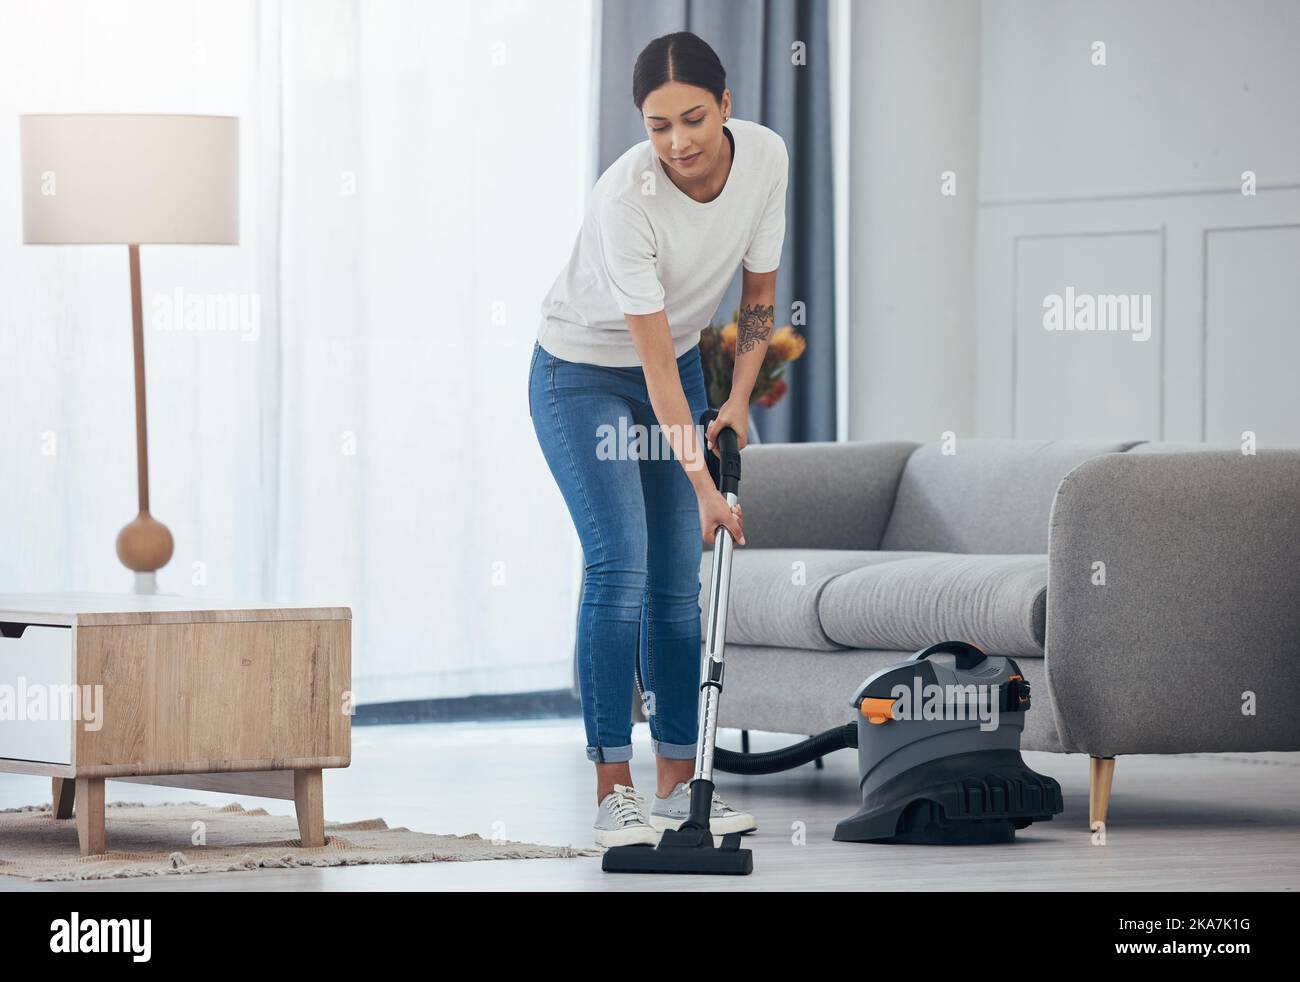 Maquina para limpiar el piso fotografías e imágenes de alta resolución -  Alamy